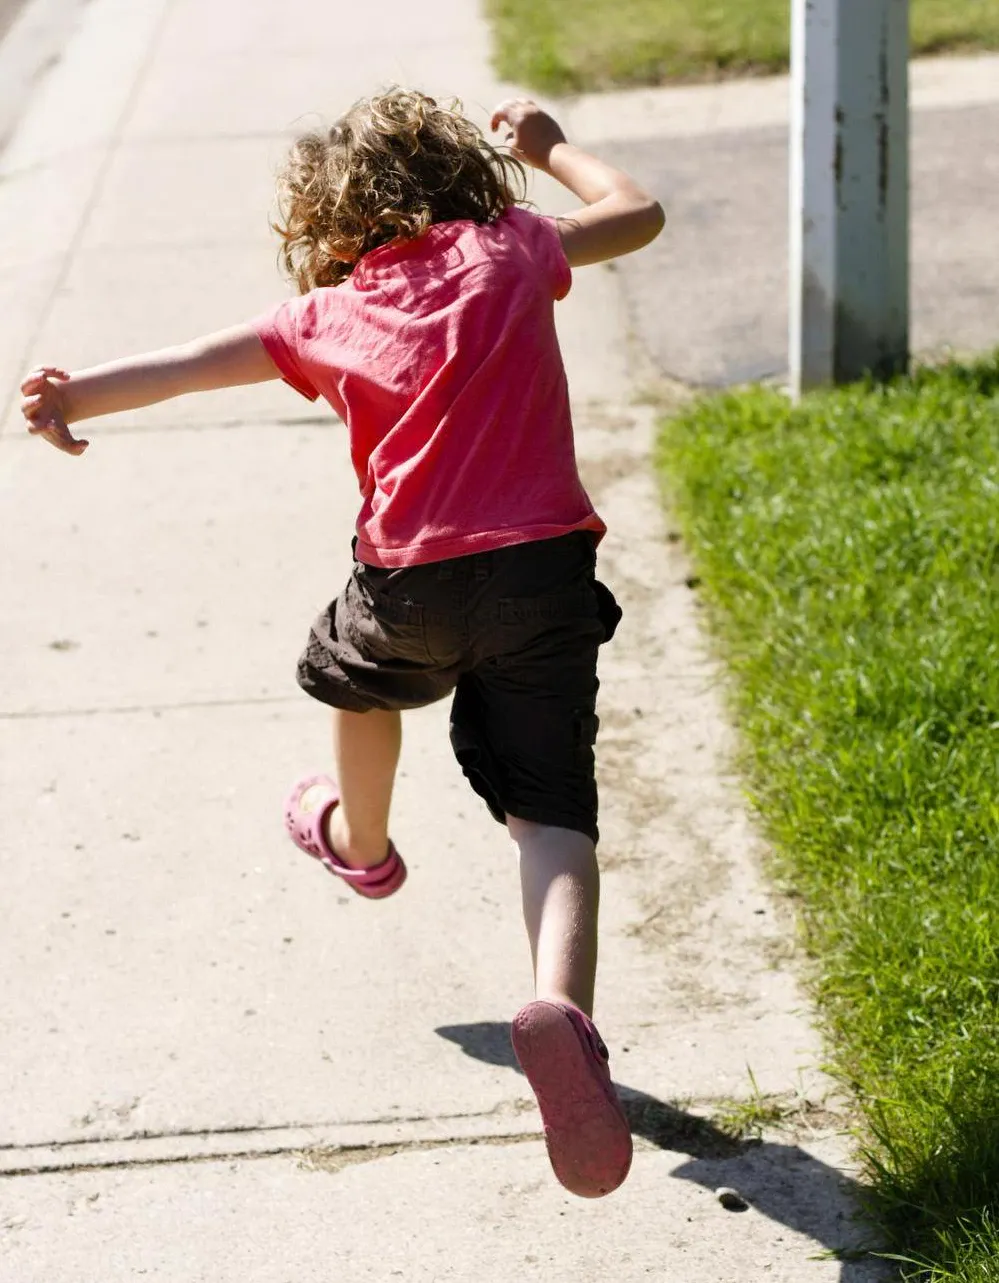 Kid hopping over cracks on the sidewalk